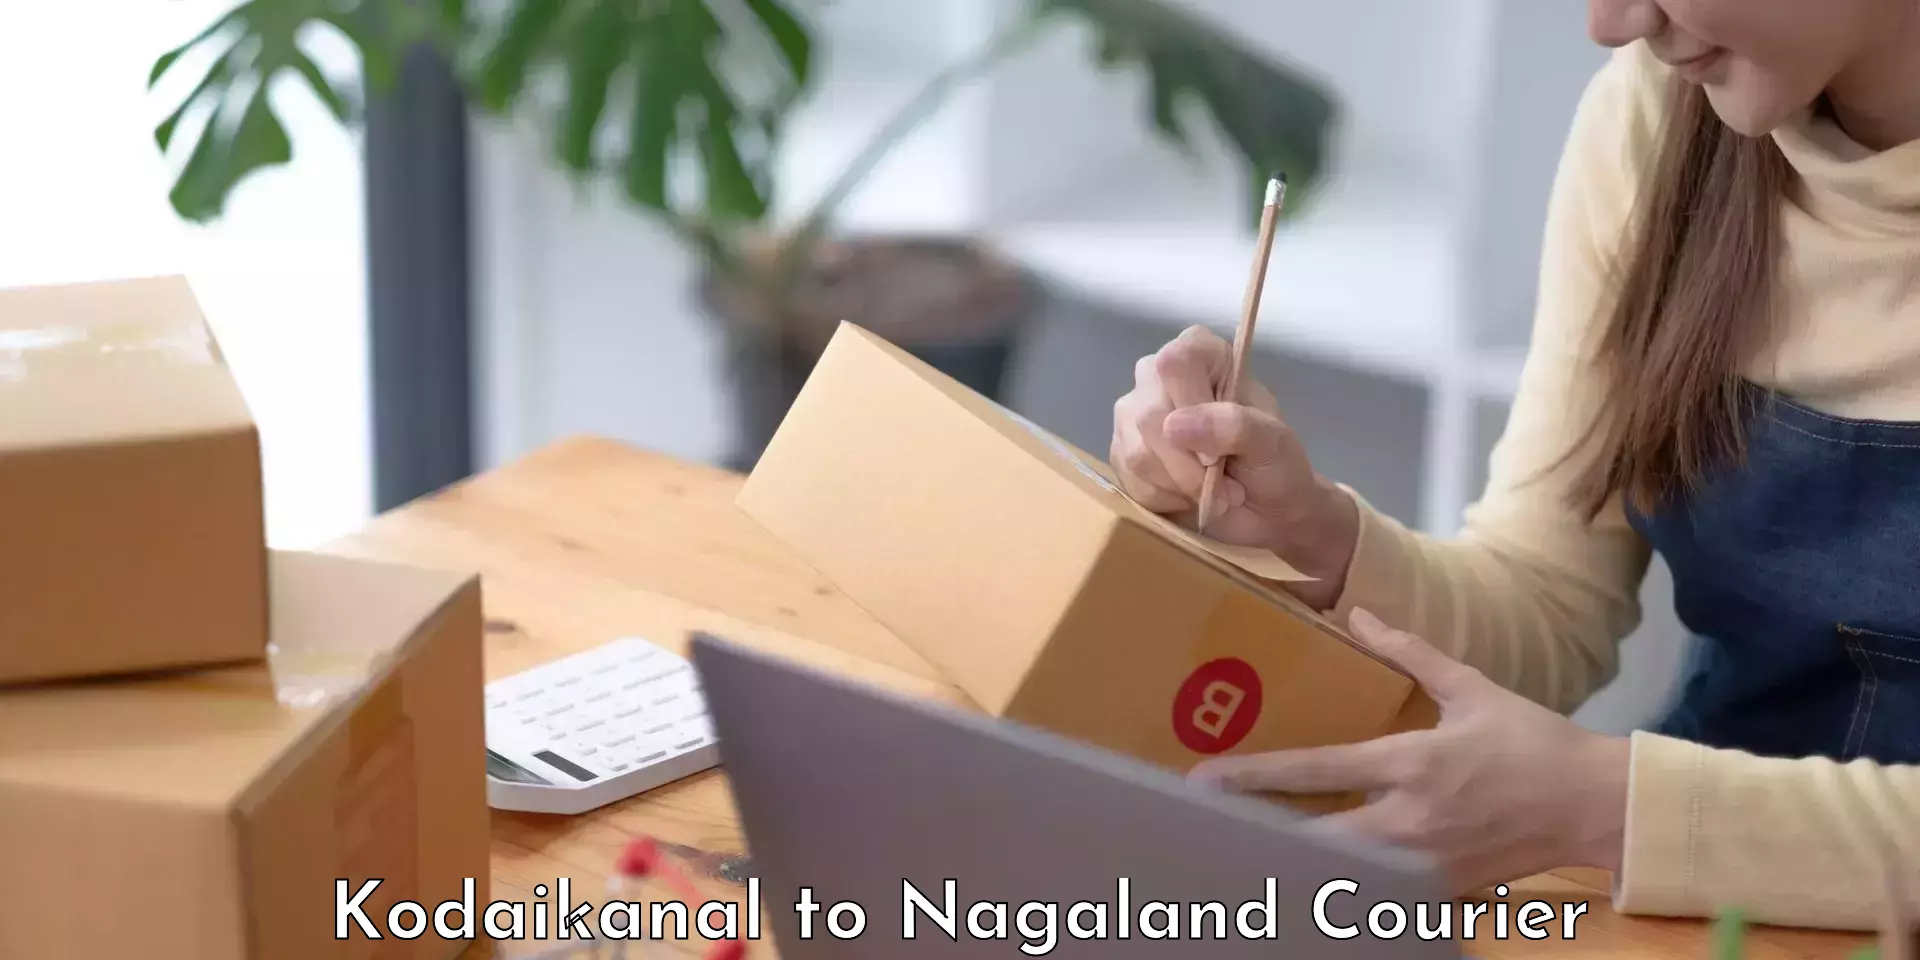 Full-service relocation Kodaikanal to Nagaland